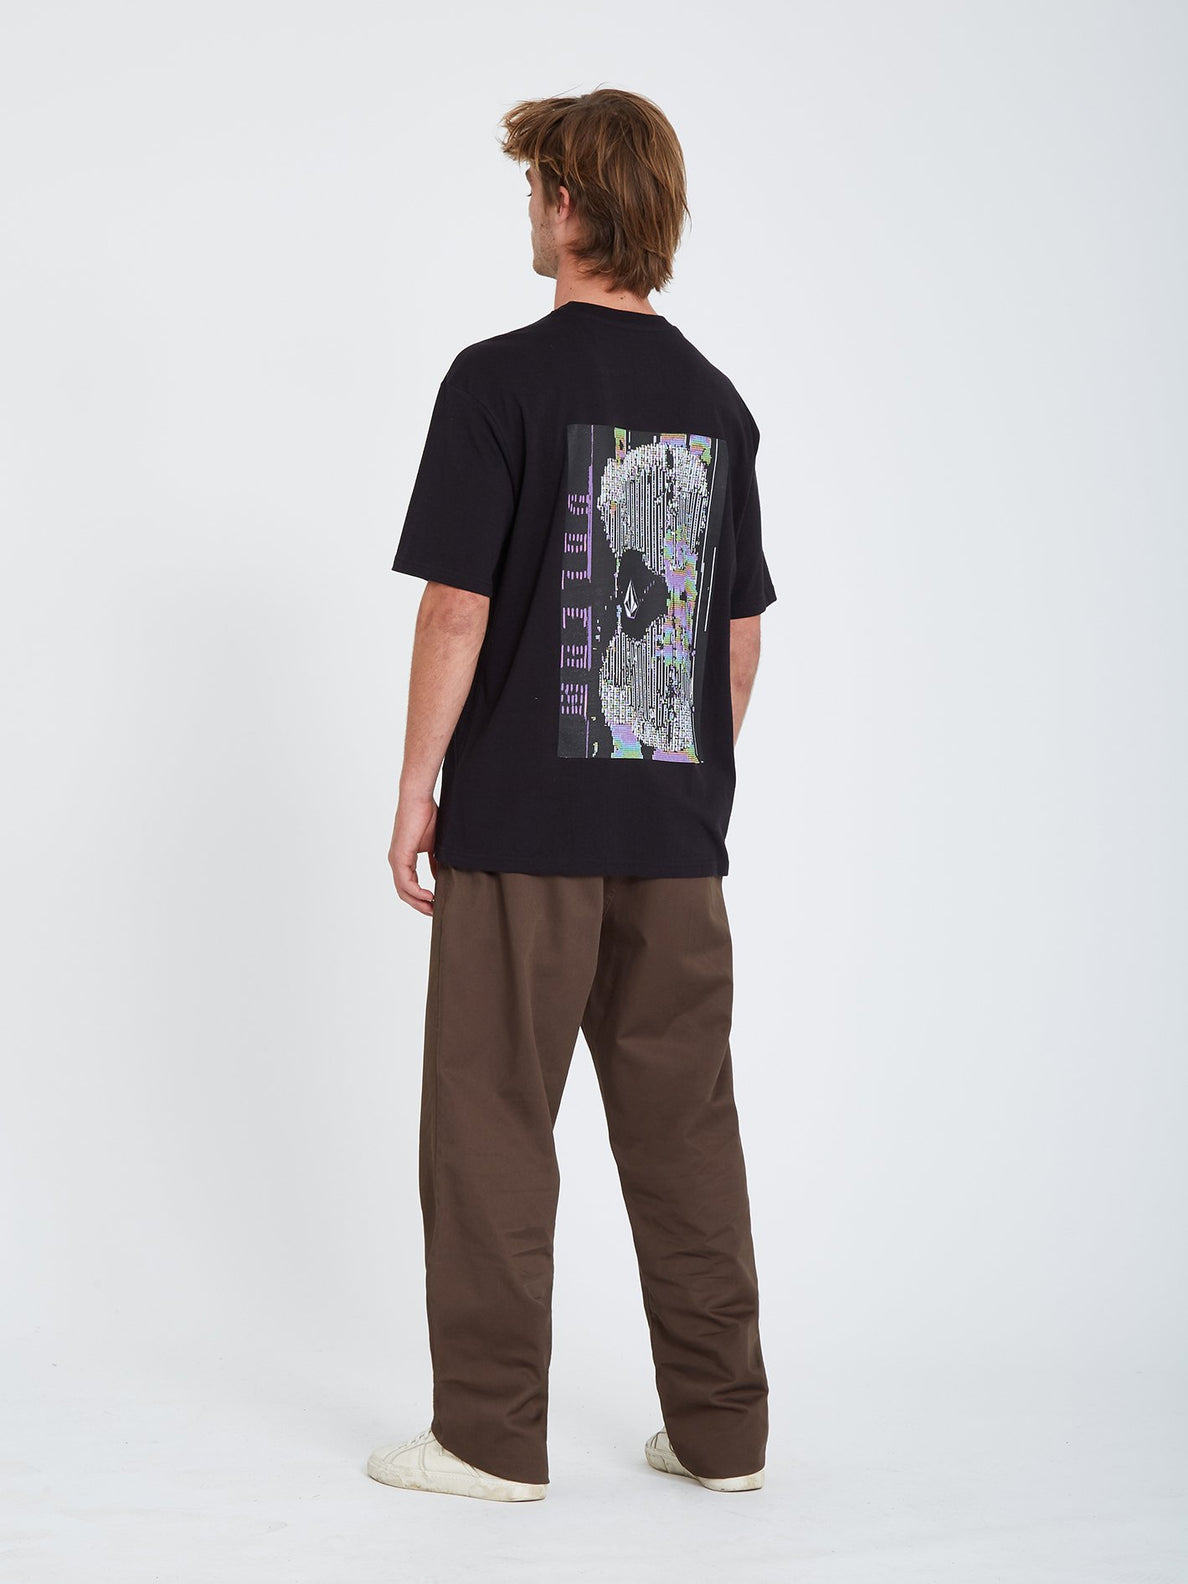 Flowscillator T-shirt - BLACK (A4332107_BLK) [16]